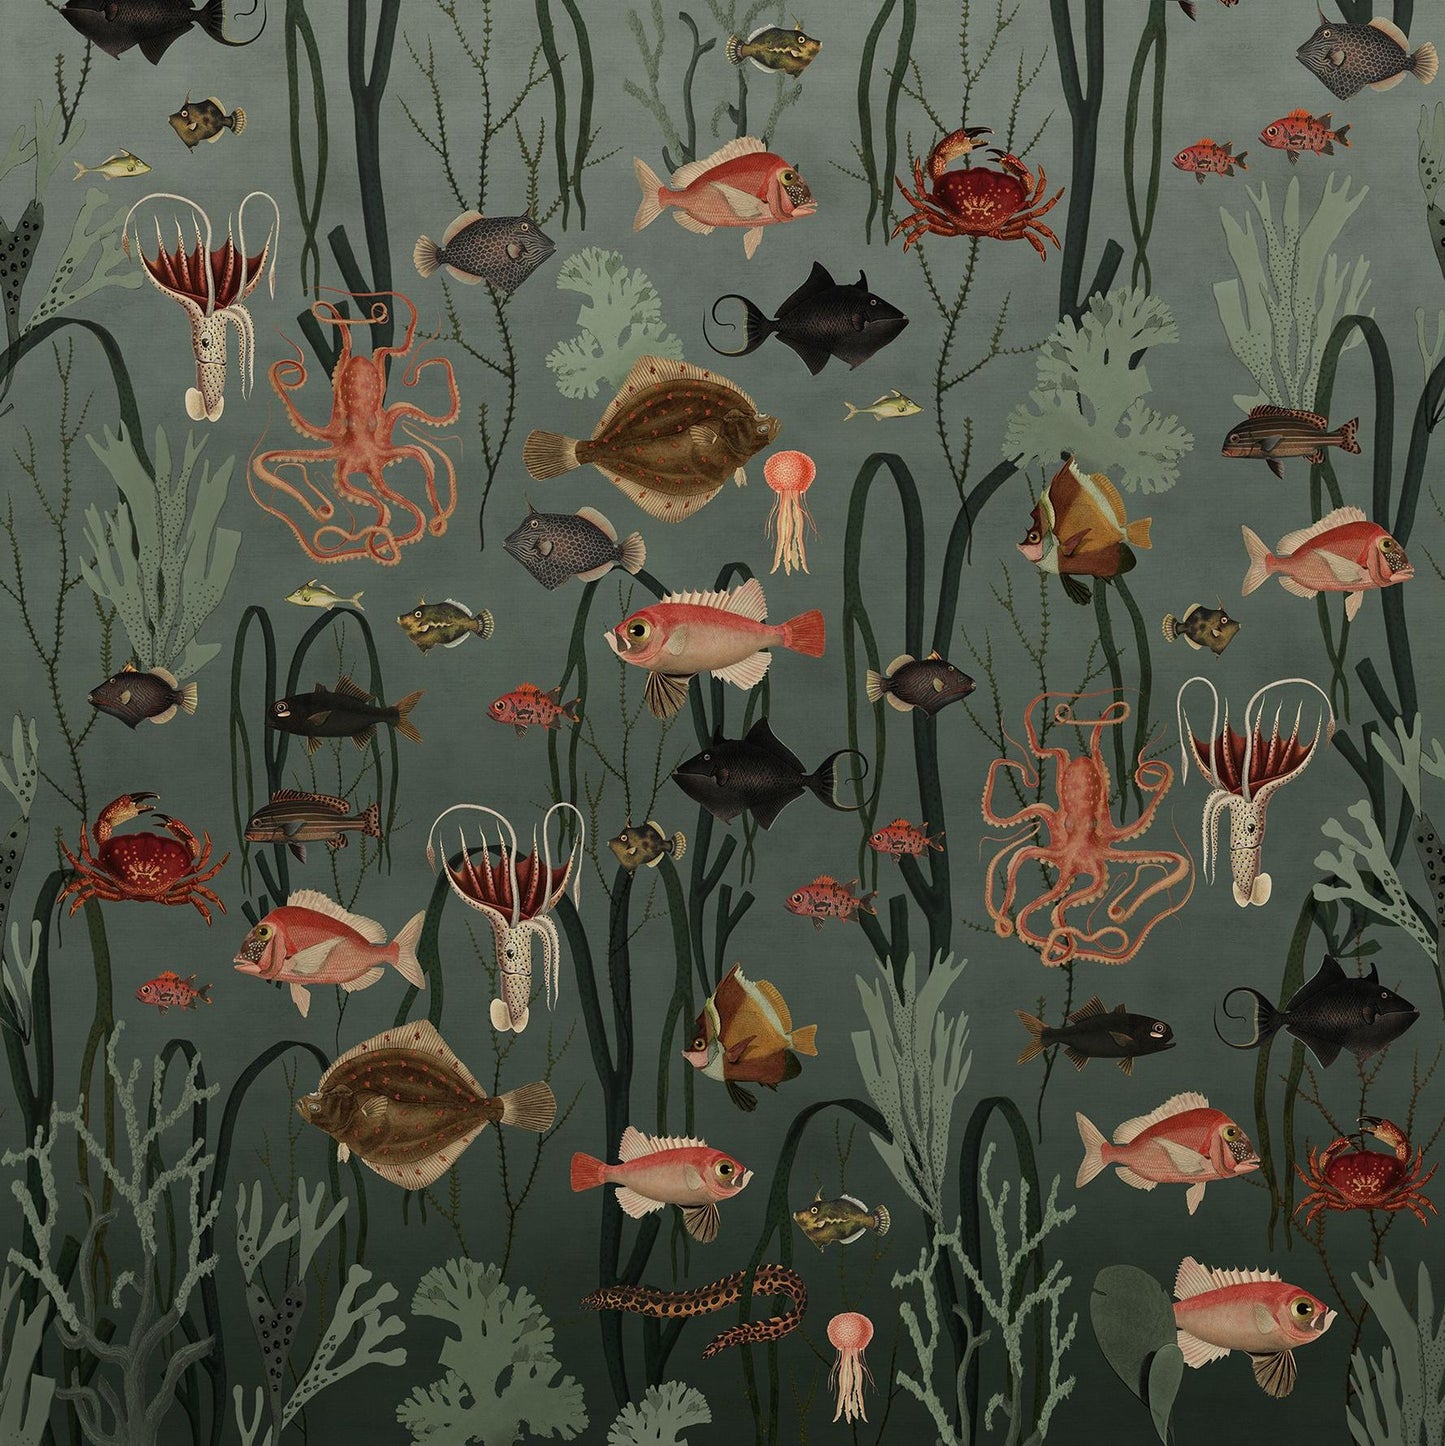 Oxygen Underwater World Mural Wallpaper (SqM)